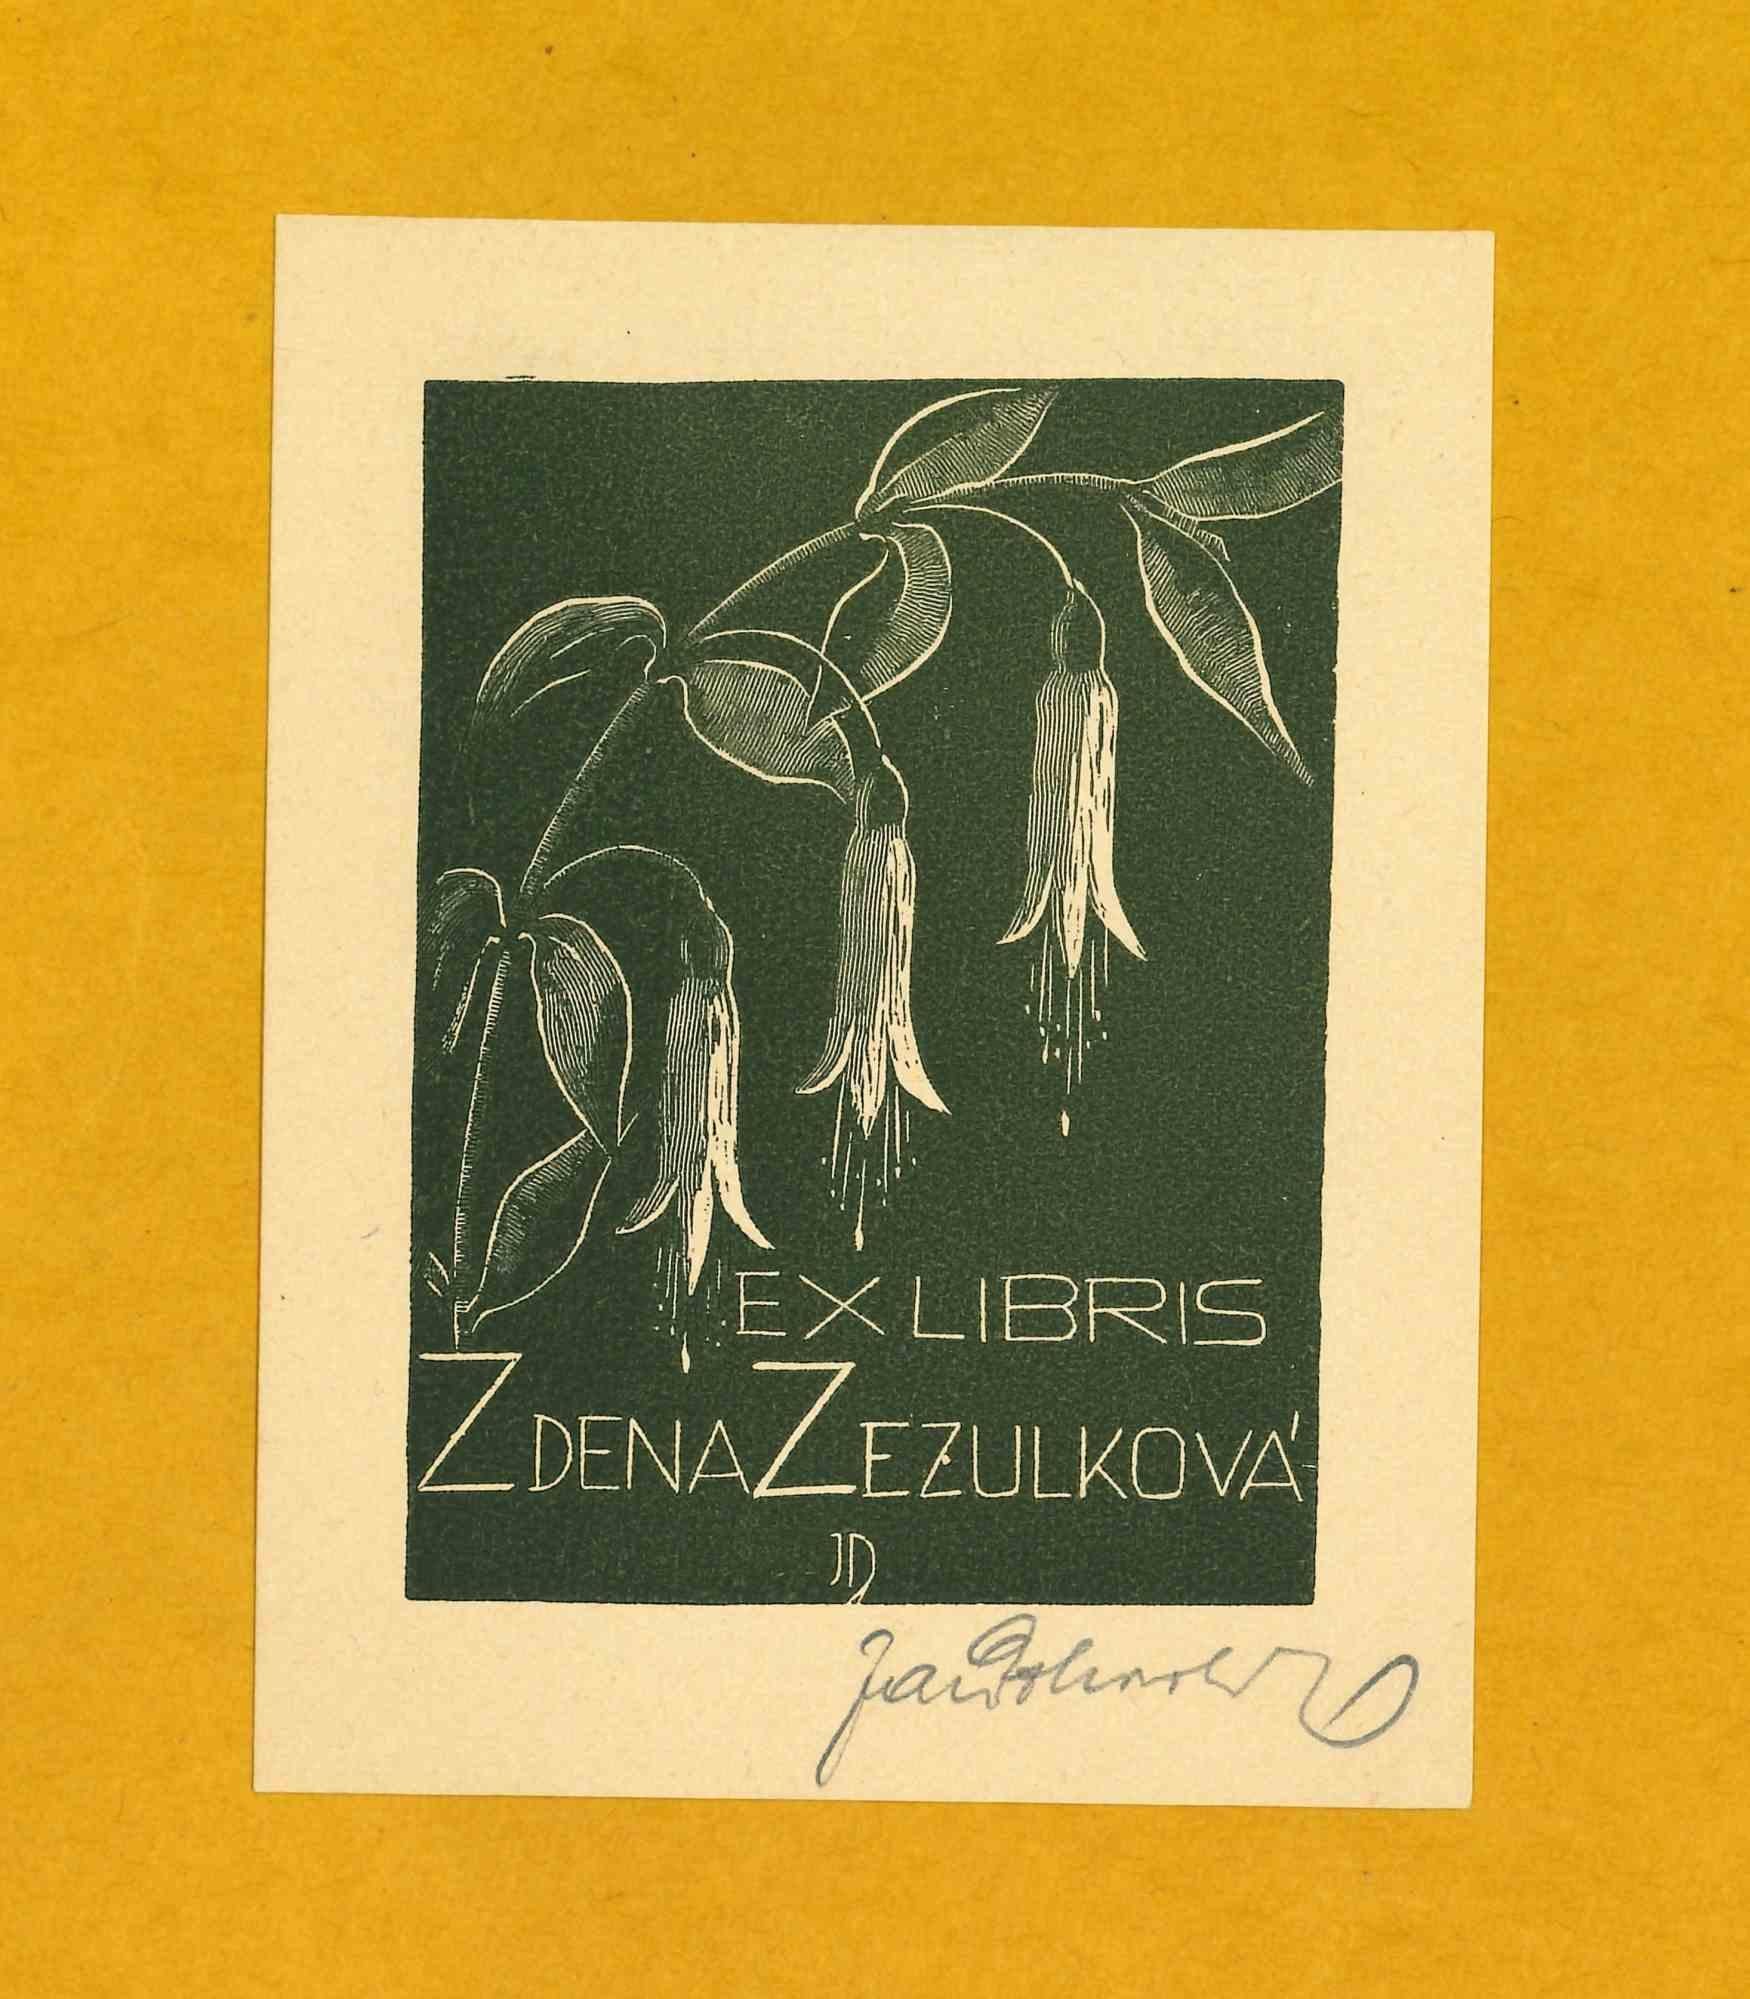 Ex Libris Zdena Zezulkova - Original Woodcut - 1970s